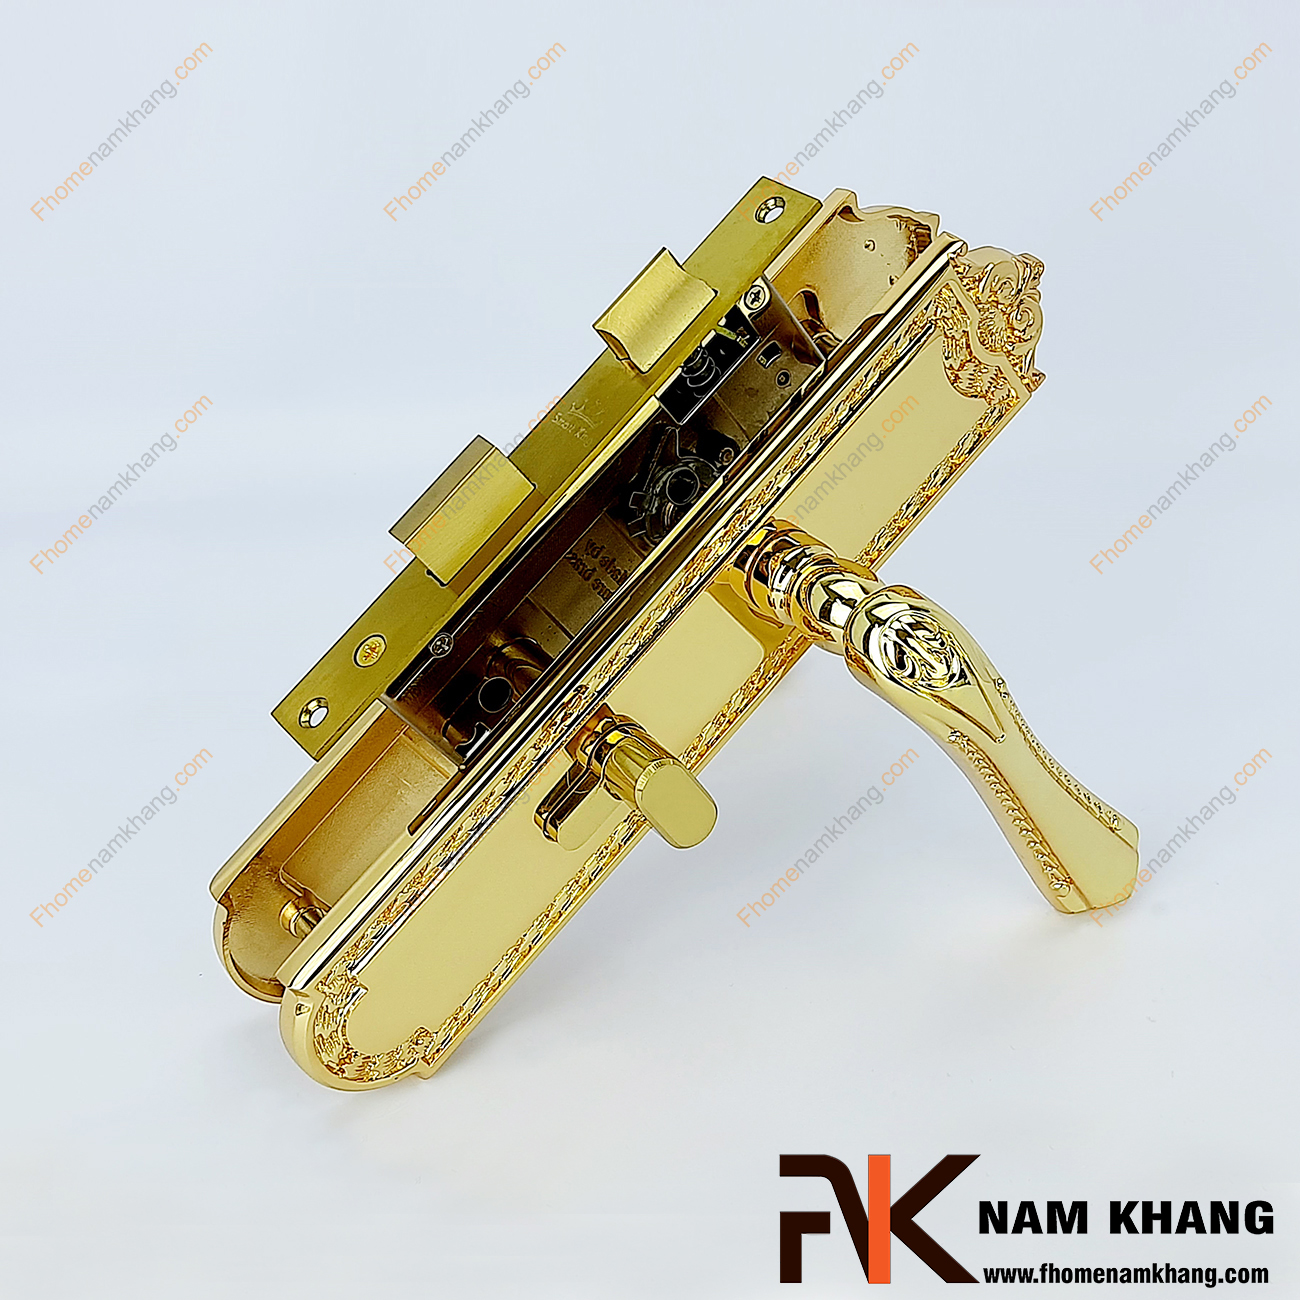 Khóa cửa thông phòng bằng đồng cao cấp màu vàng bóng NK193M-24K. Đây là sản phẩm khóa cửa nhập khẩu nguyên bộ được sản xuất trên dây chuyền hiện đại với công nghệ gia công chi tiết cao.